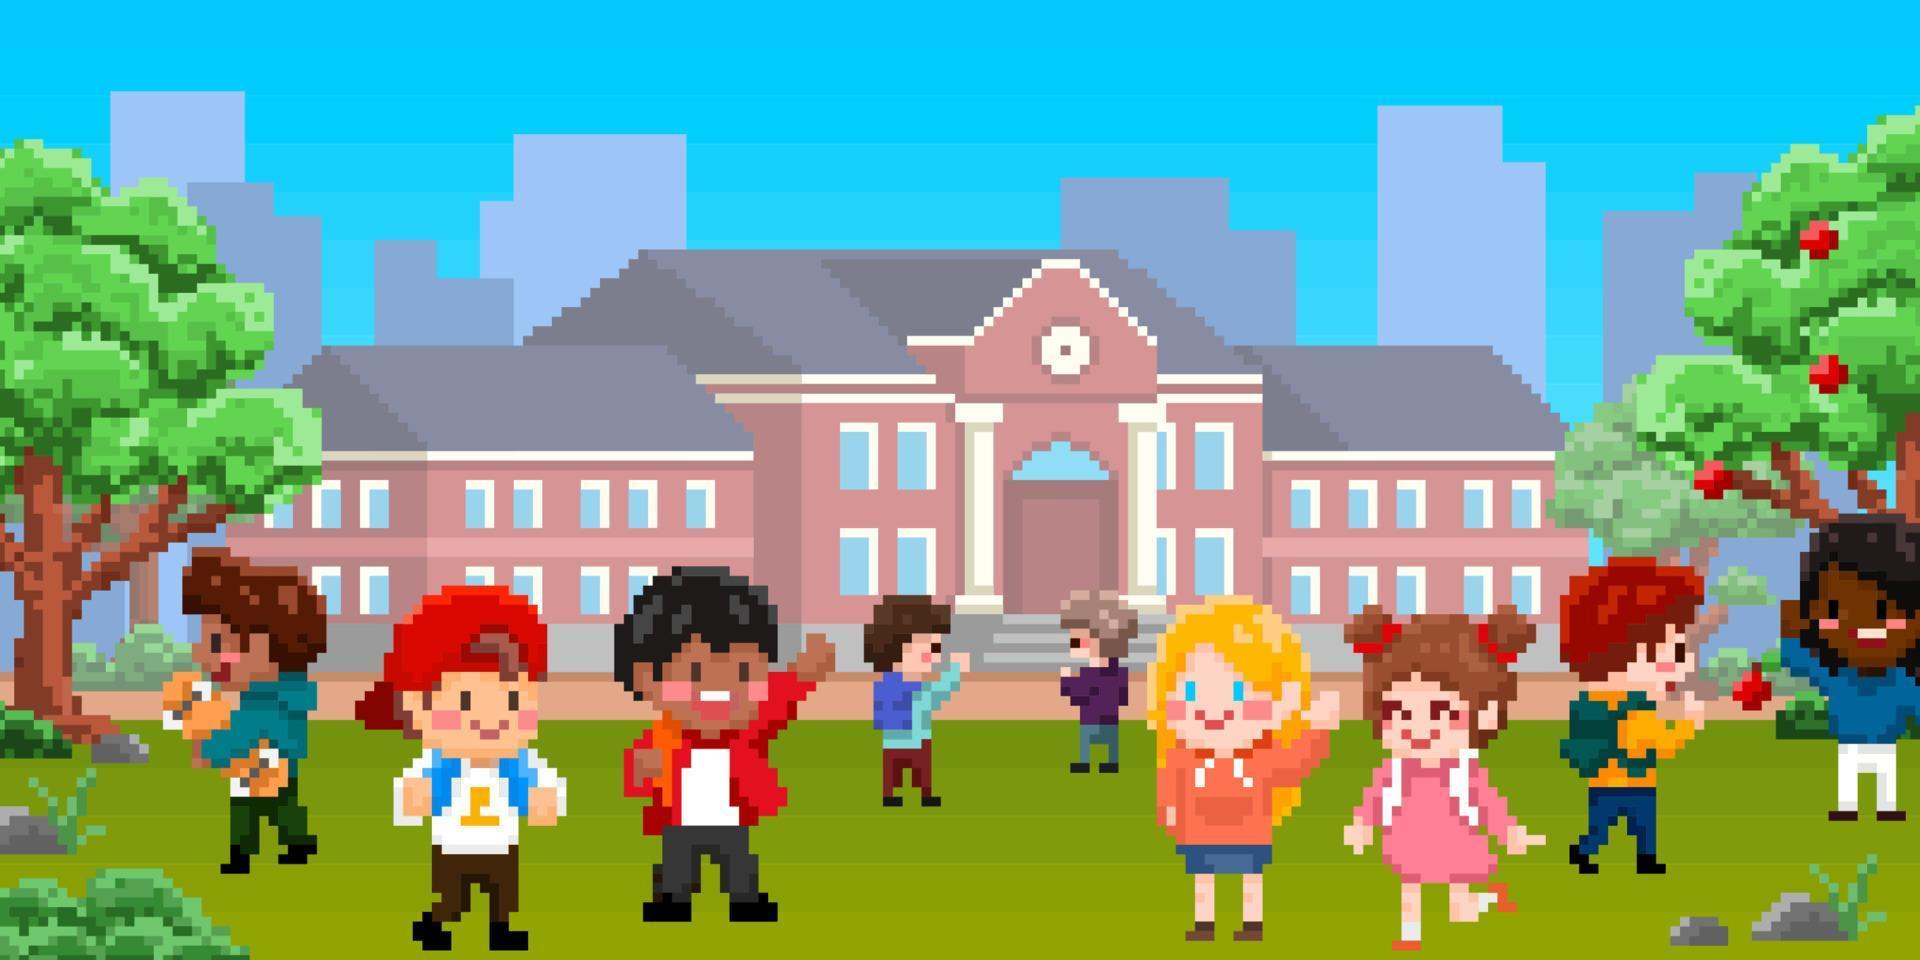 8bit pixel konst av barn spelar i skola lekplats. Pojkar och flickor tecken med skola byggnad lämplig för spel vektor